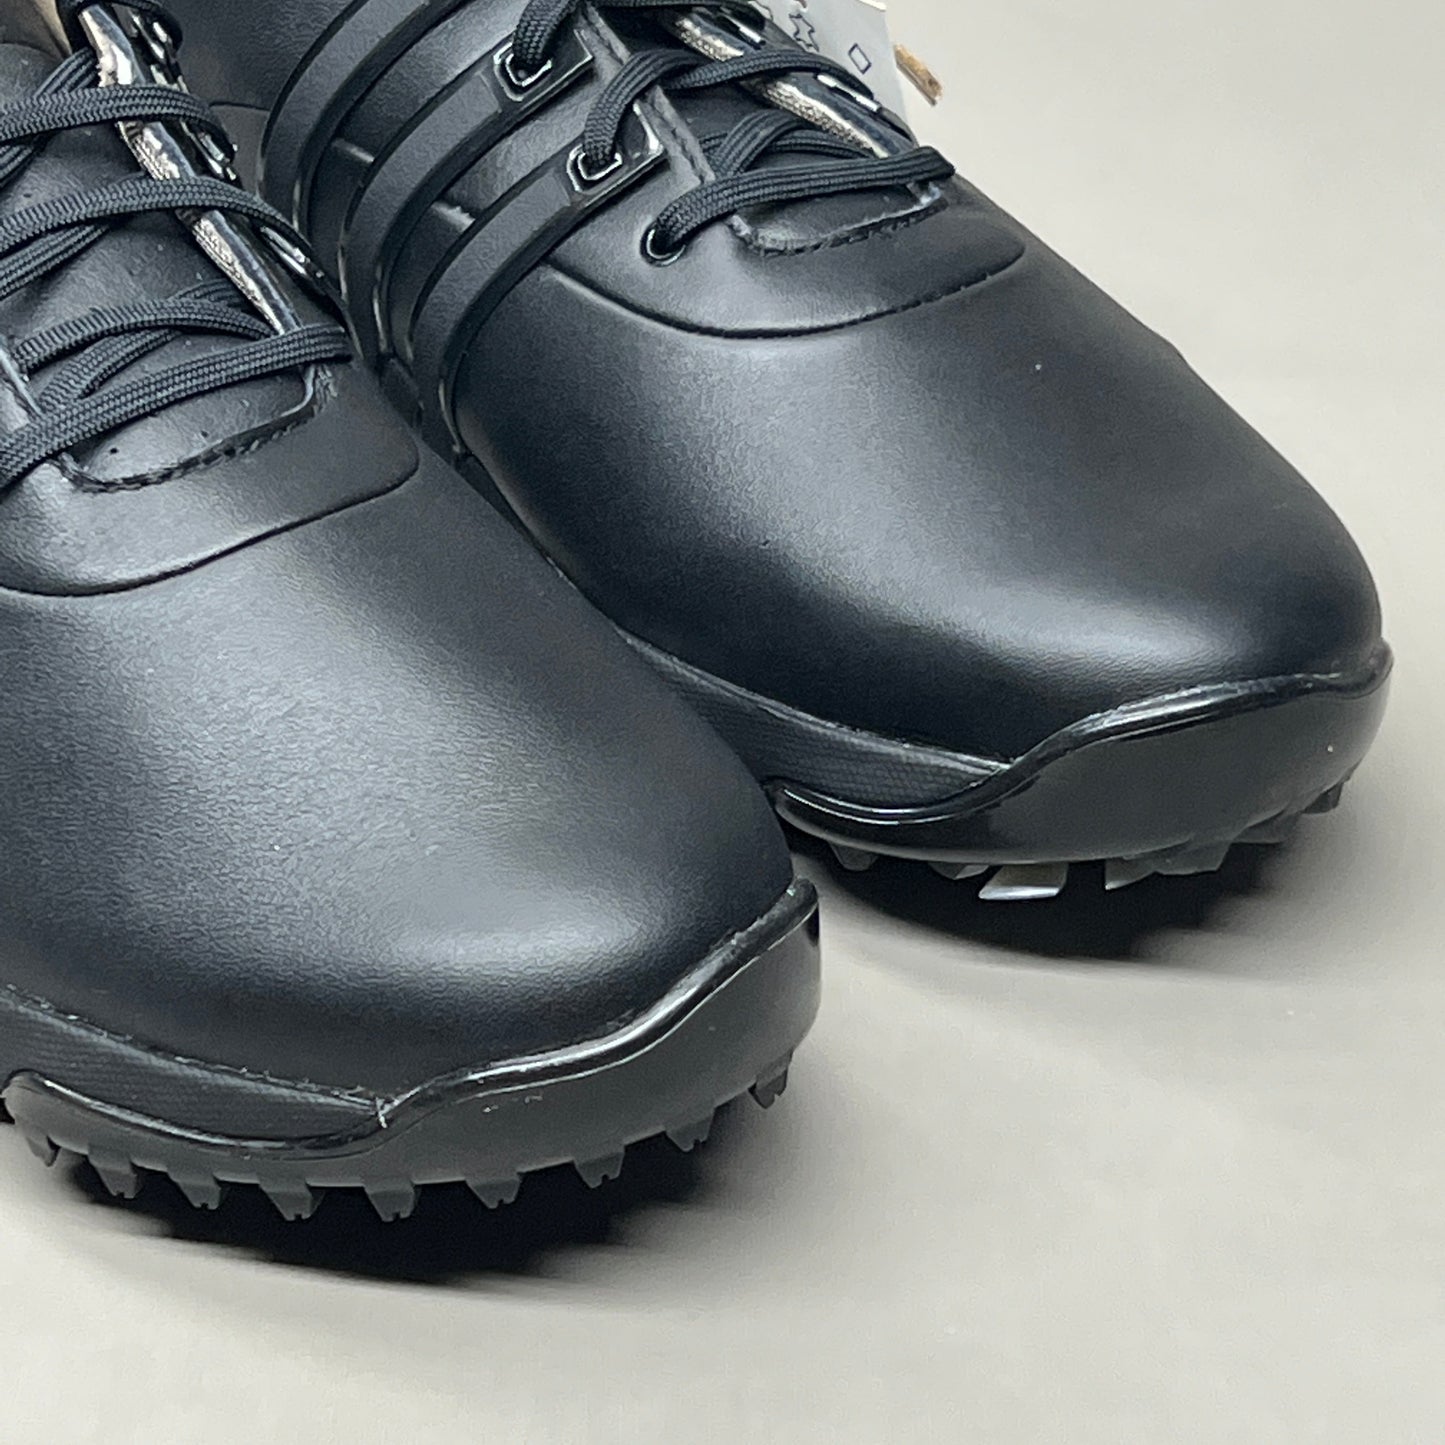 ADIDAS Golf Shoes TOUR360 22 Leather Men's Sz 12 Black / Iron Metallic GZ3158 (New)